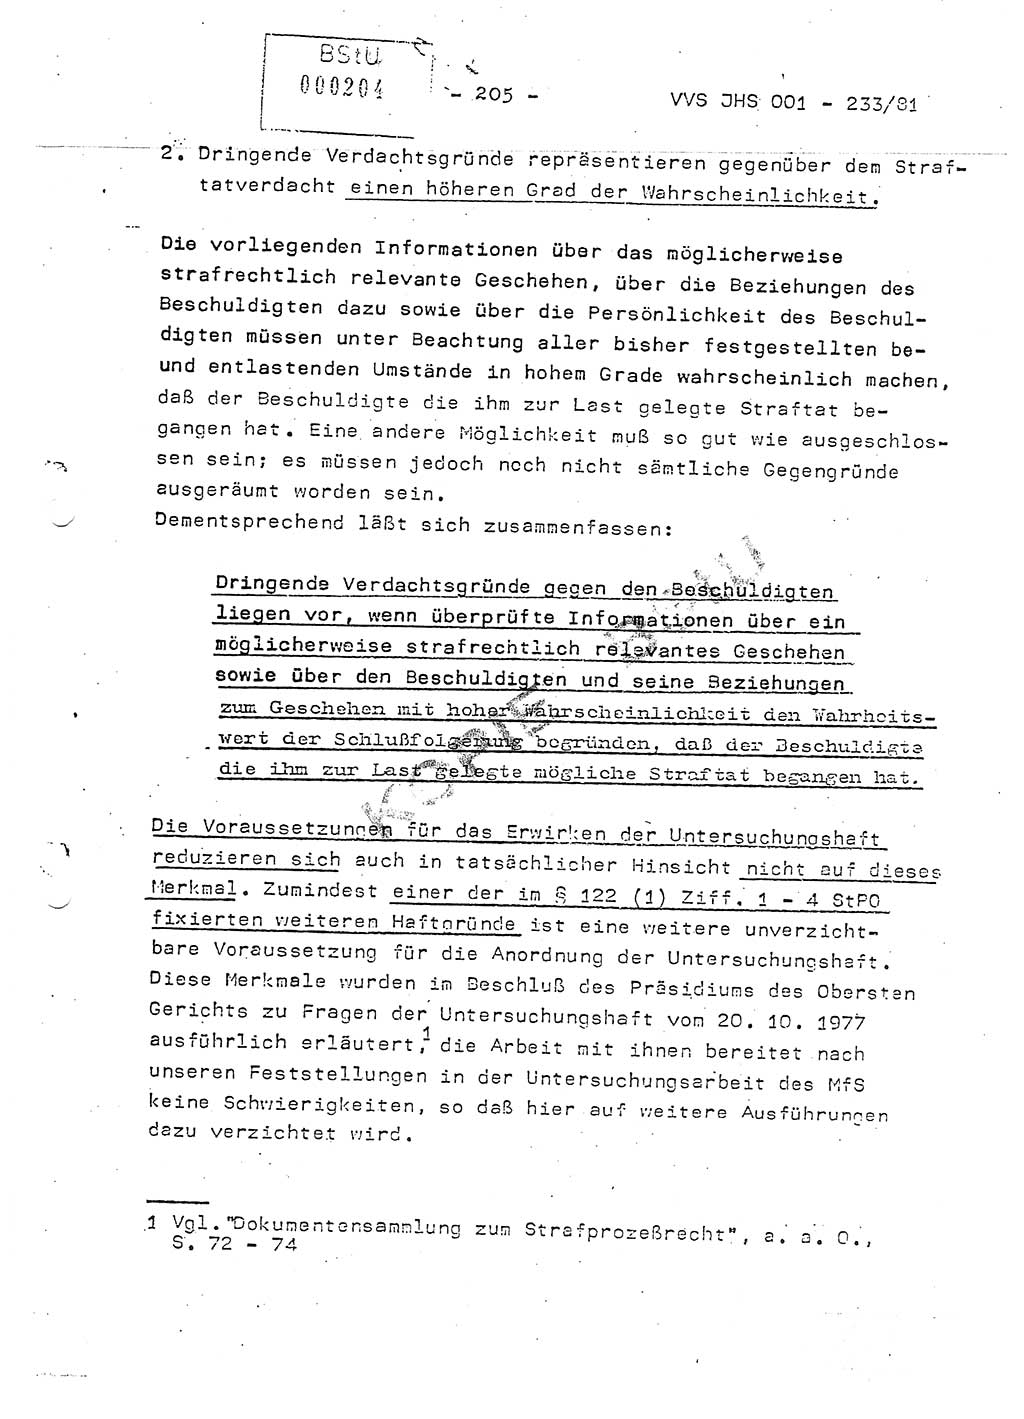 Dissertation Oberstleutnant Horst Zank (JHS), Oberstleutnant Dr. Karl-Heinz Knoblauch (JHS), Oberstleutnant Gustav-Adolf Kowalewski (HA Ⅸ), Oberstleutnant Wolfgang Plötner (HA Ⅸ), Ministerium für Staatssicherheit (MfS) [Deutsche Demokratische Republik (DDR)], Juristische Hochschule (JHS), Vertrauliche Verschlußsache (VVS) o001-233/81, Potsdam 1981, Blatt 205 (Diss. MfS DDR JHS VVS o001-233/81 1981, Bl. 205)